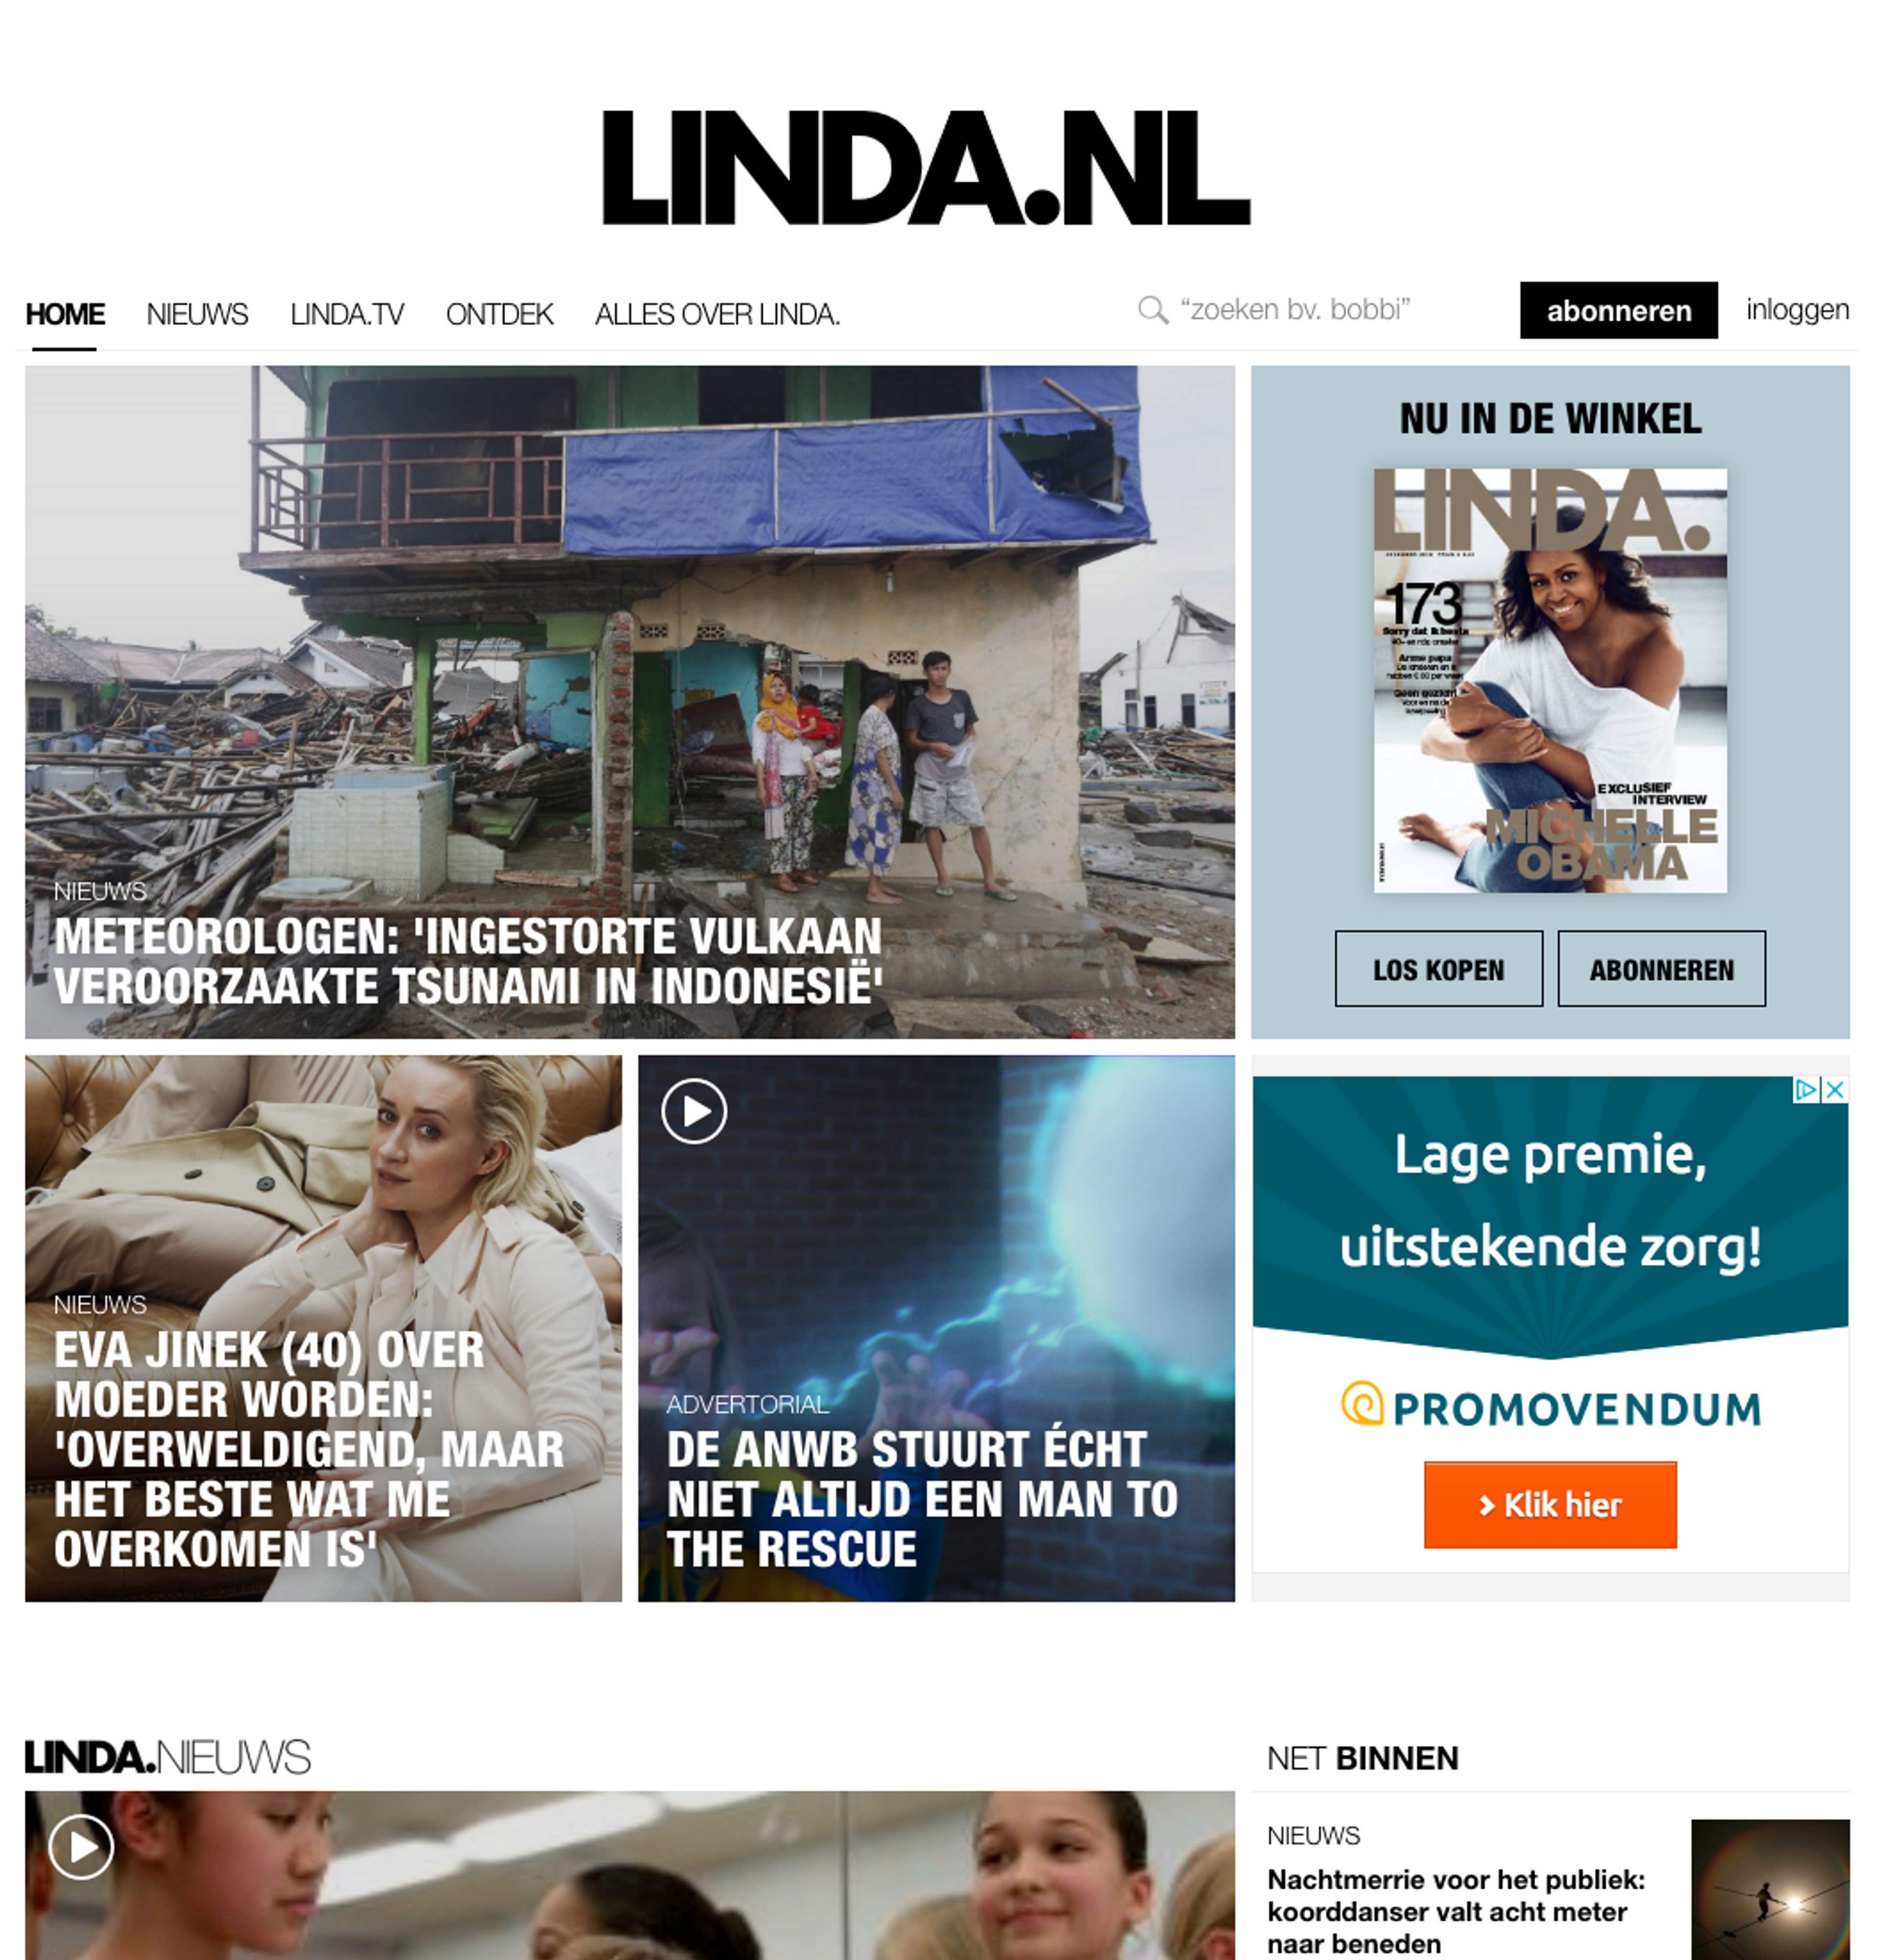 Linda lanceert één platform voor alle content: LINDA.nl